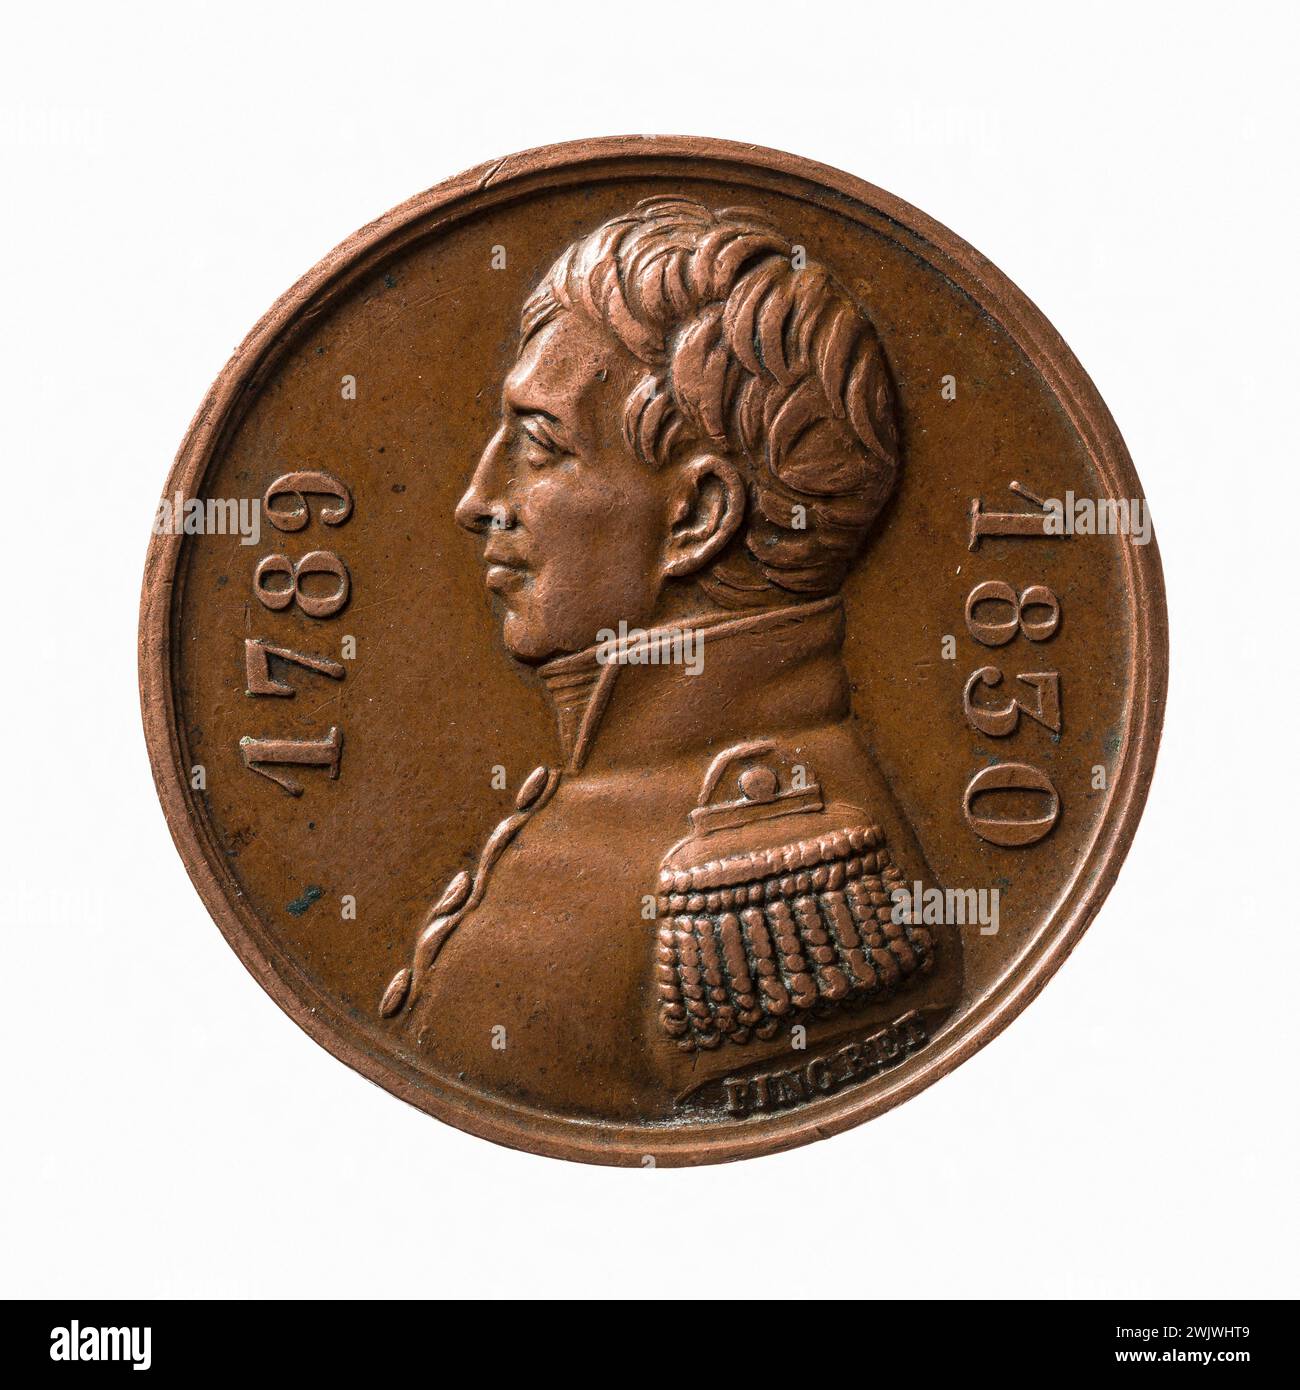 Joseph Arnold Pingret (1798-1862). Tribute to Lafayette by the Voltigeurs de Chaillot, August 28, 1830. Copper, 1831. Paris, Musée Carnavalet. Medal, numismatics Stock Photo